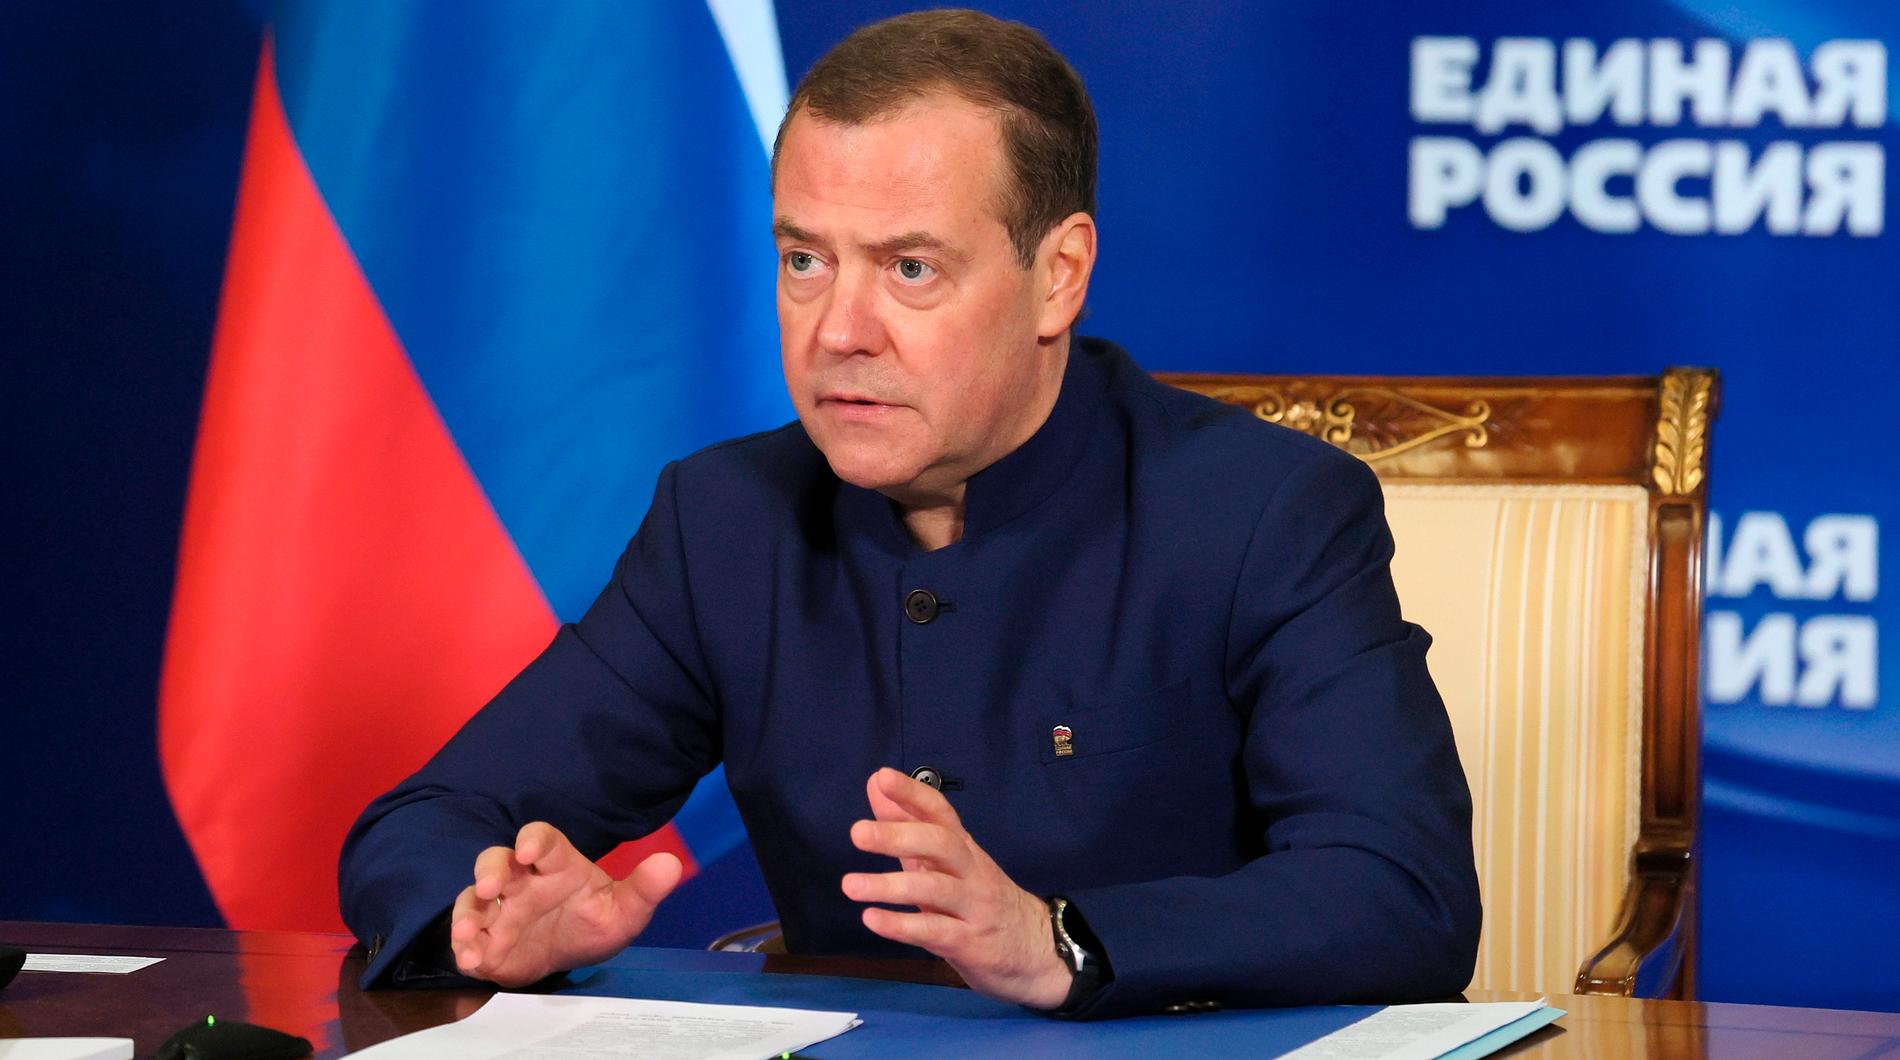 Det går många rykten om Dmitrij Medvedevs höga alkoholkonsumtion. Enligt två källor är han ofta berusad när han skriver inlägg på meddelandtjänsten Telegram.